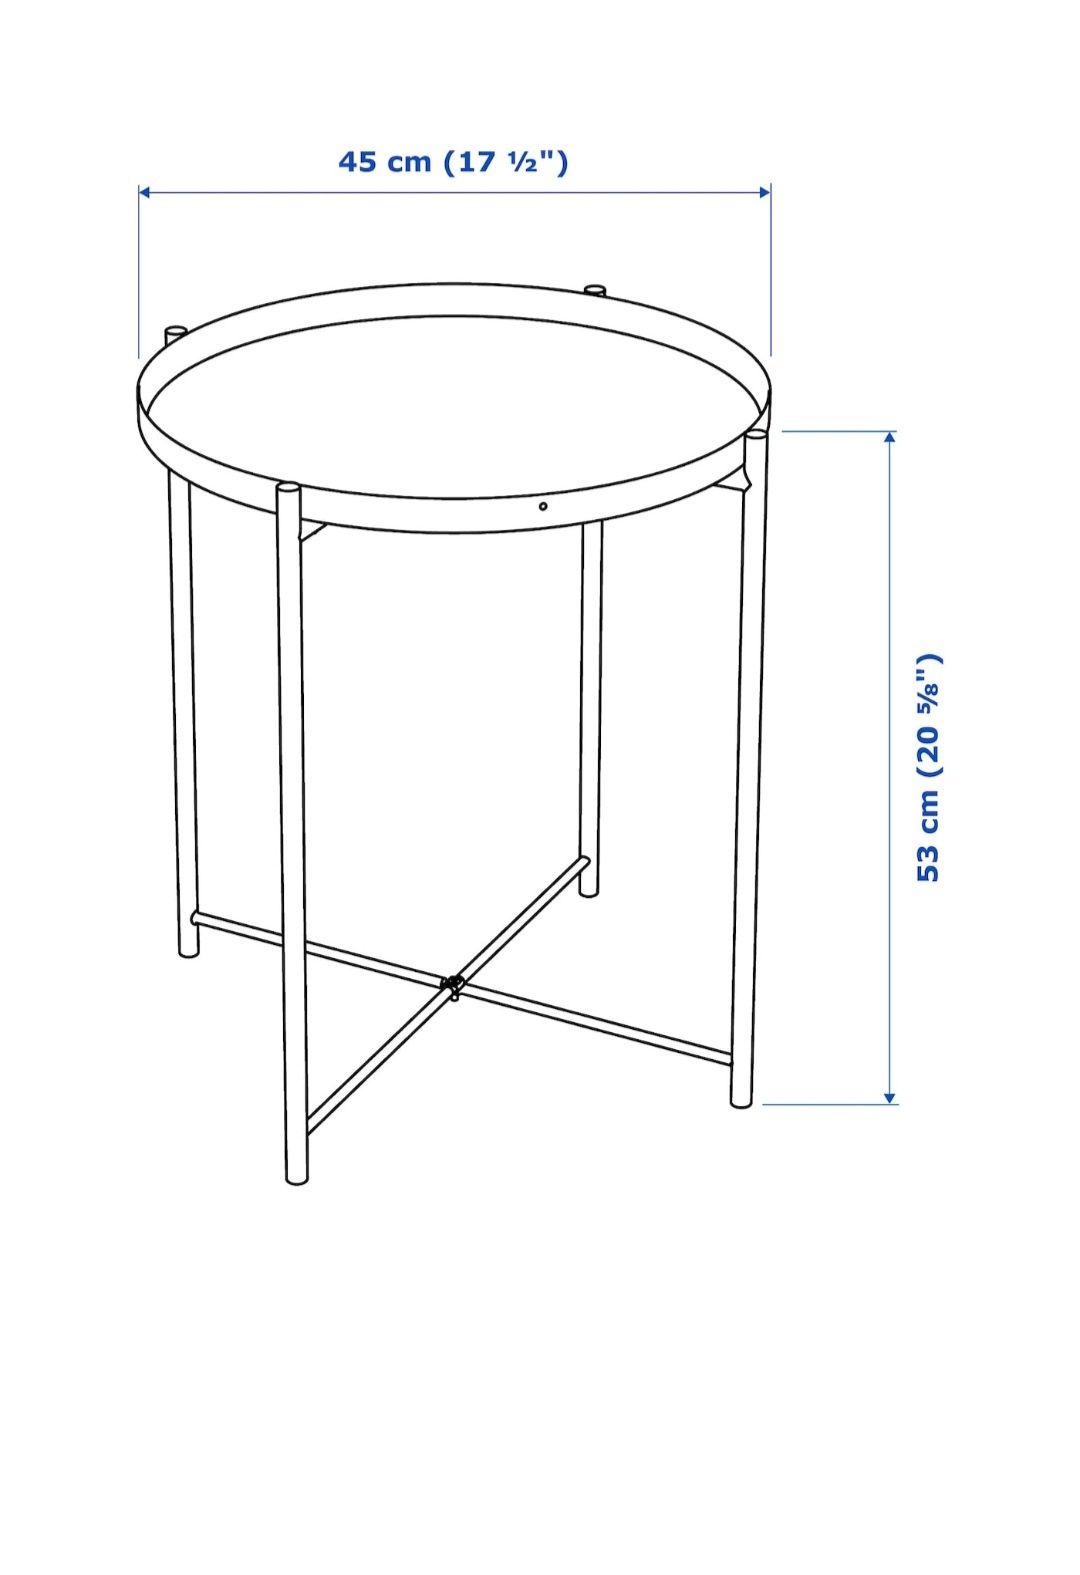 GLADOM Stolik z tacą, Ikea, kolor biały, 45x53 cm, numer produktu 703.